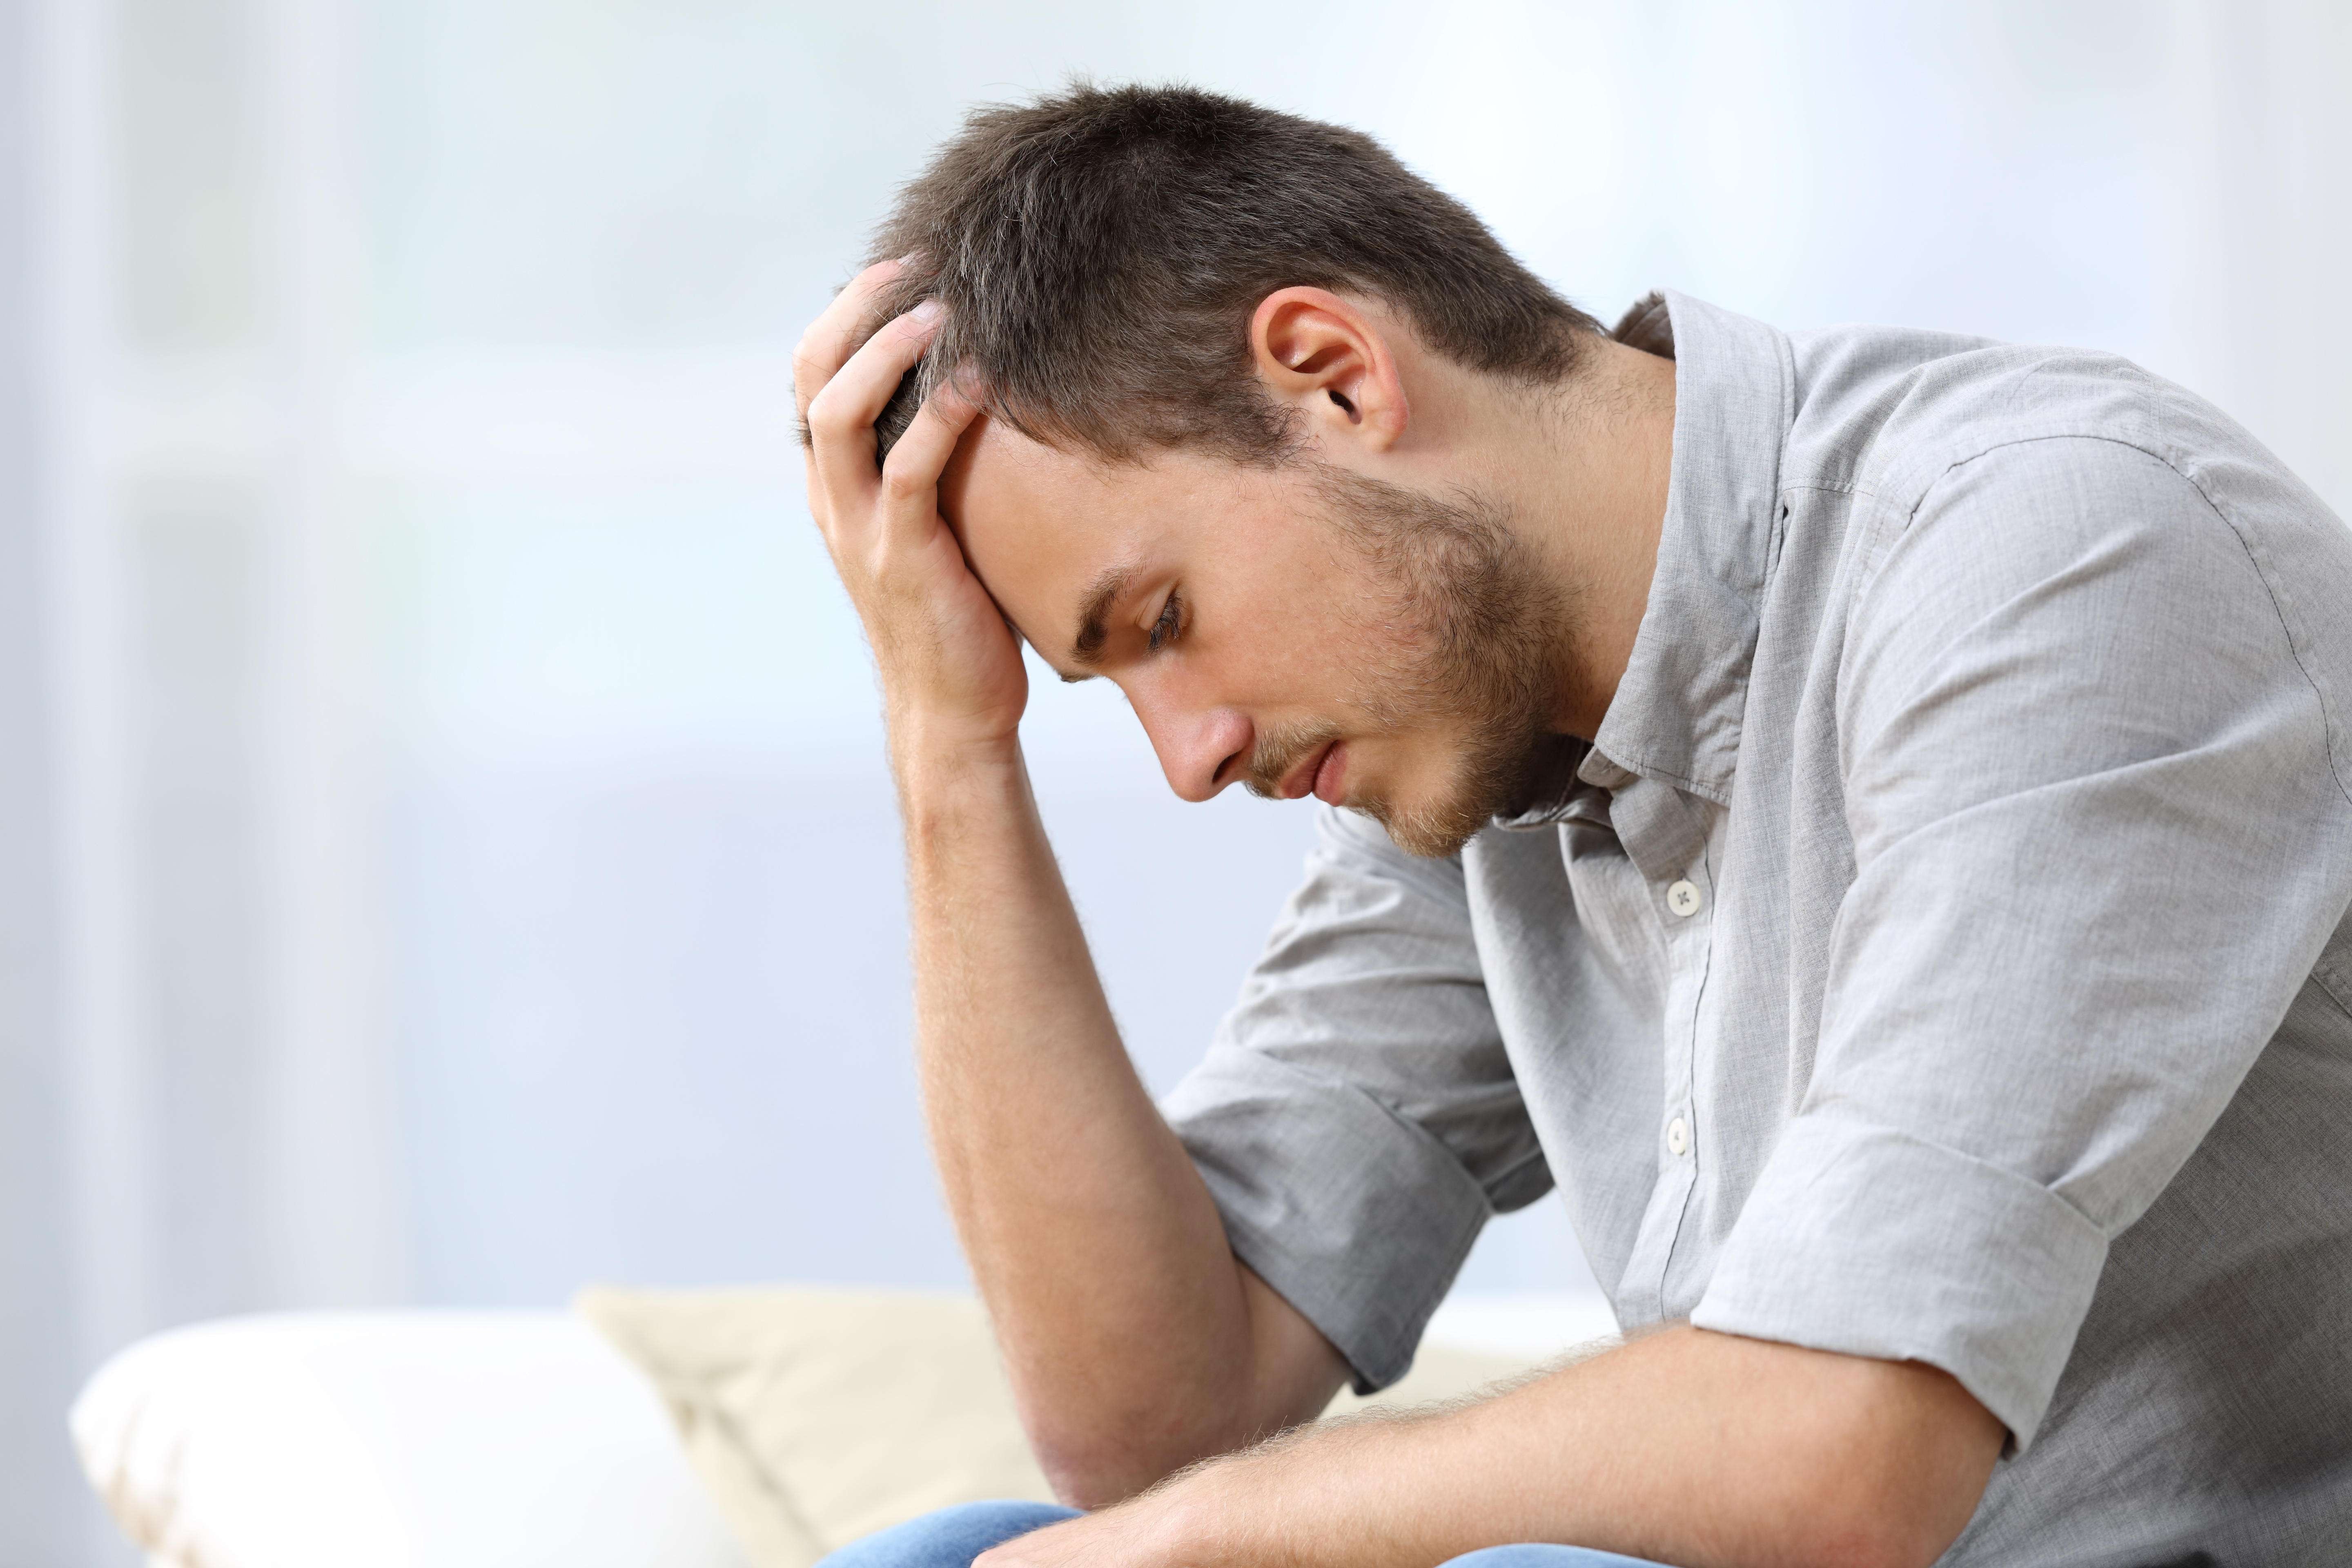 Un hombre con aspecto estresado | Foto: Shutterstock